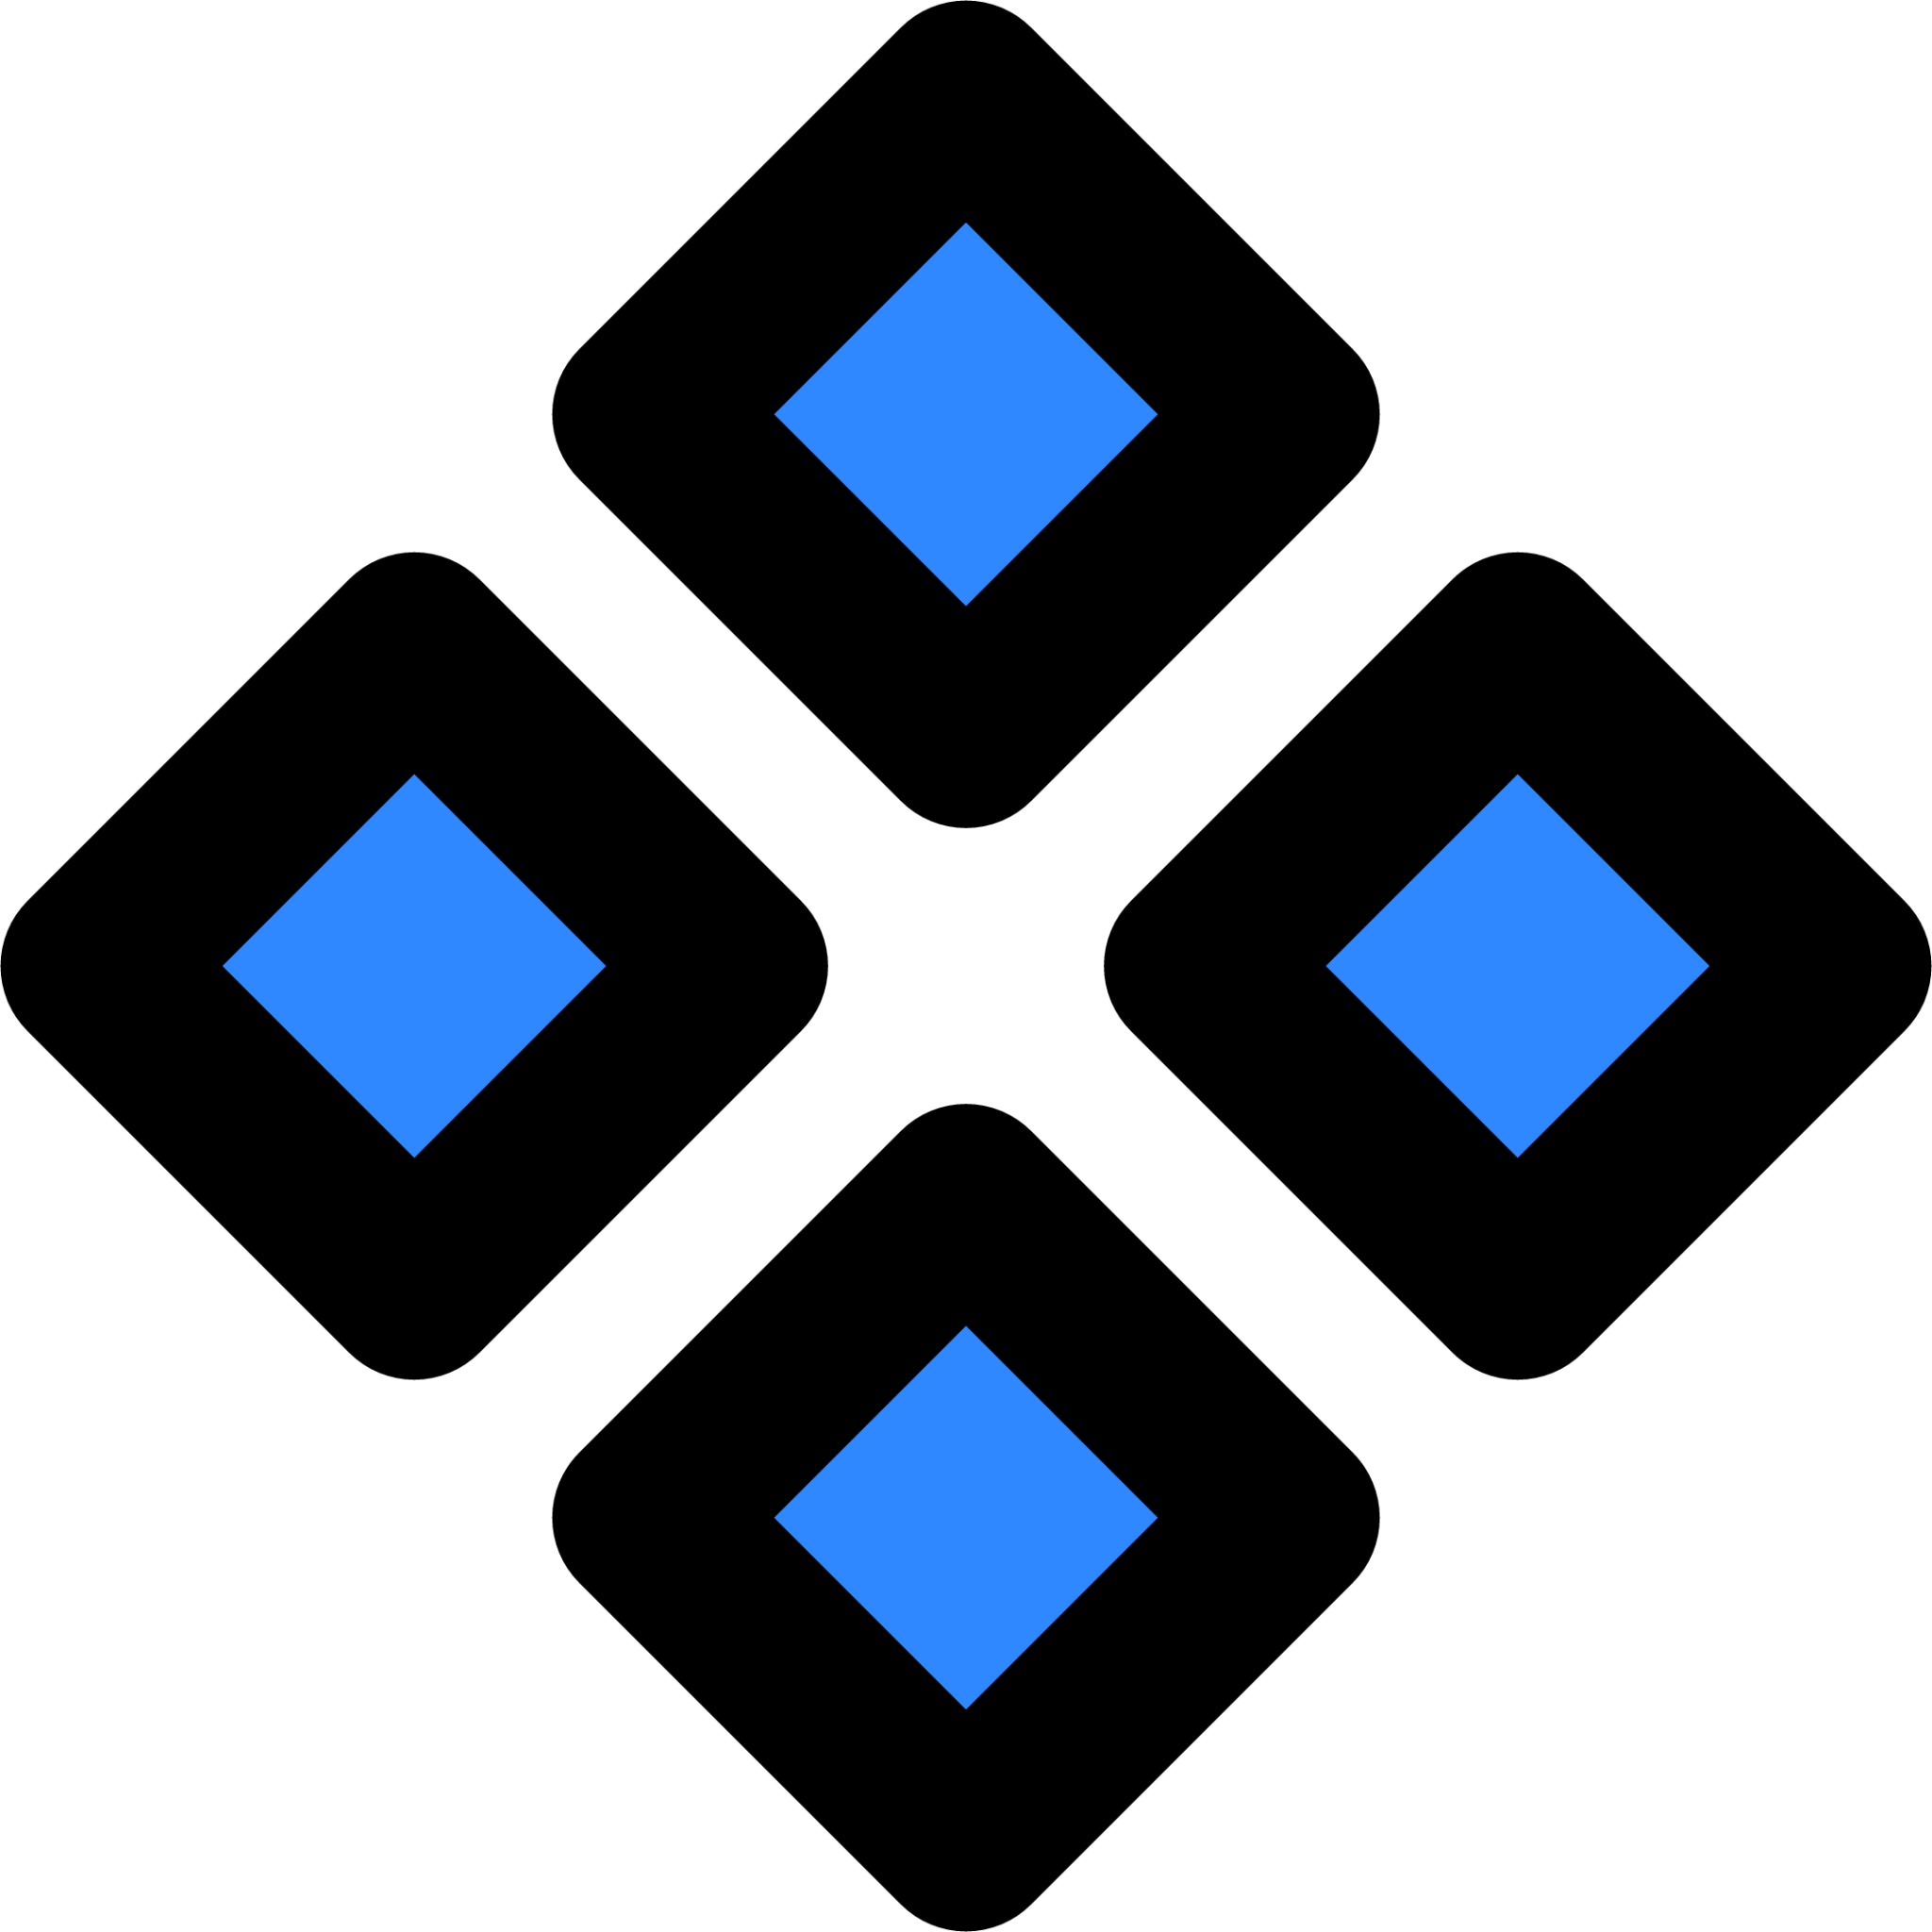 figma component icon